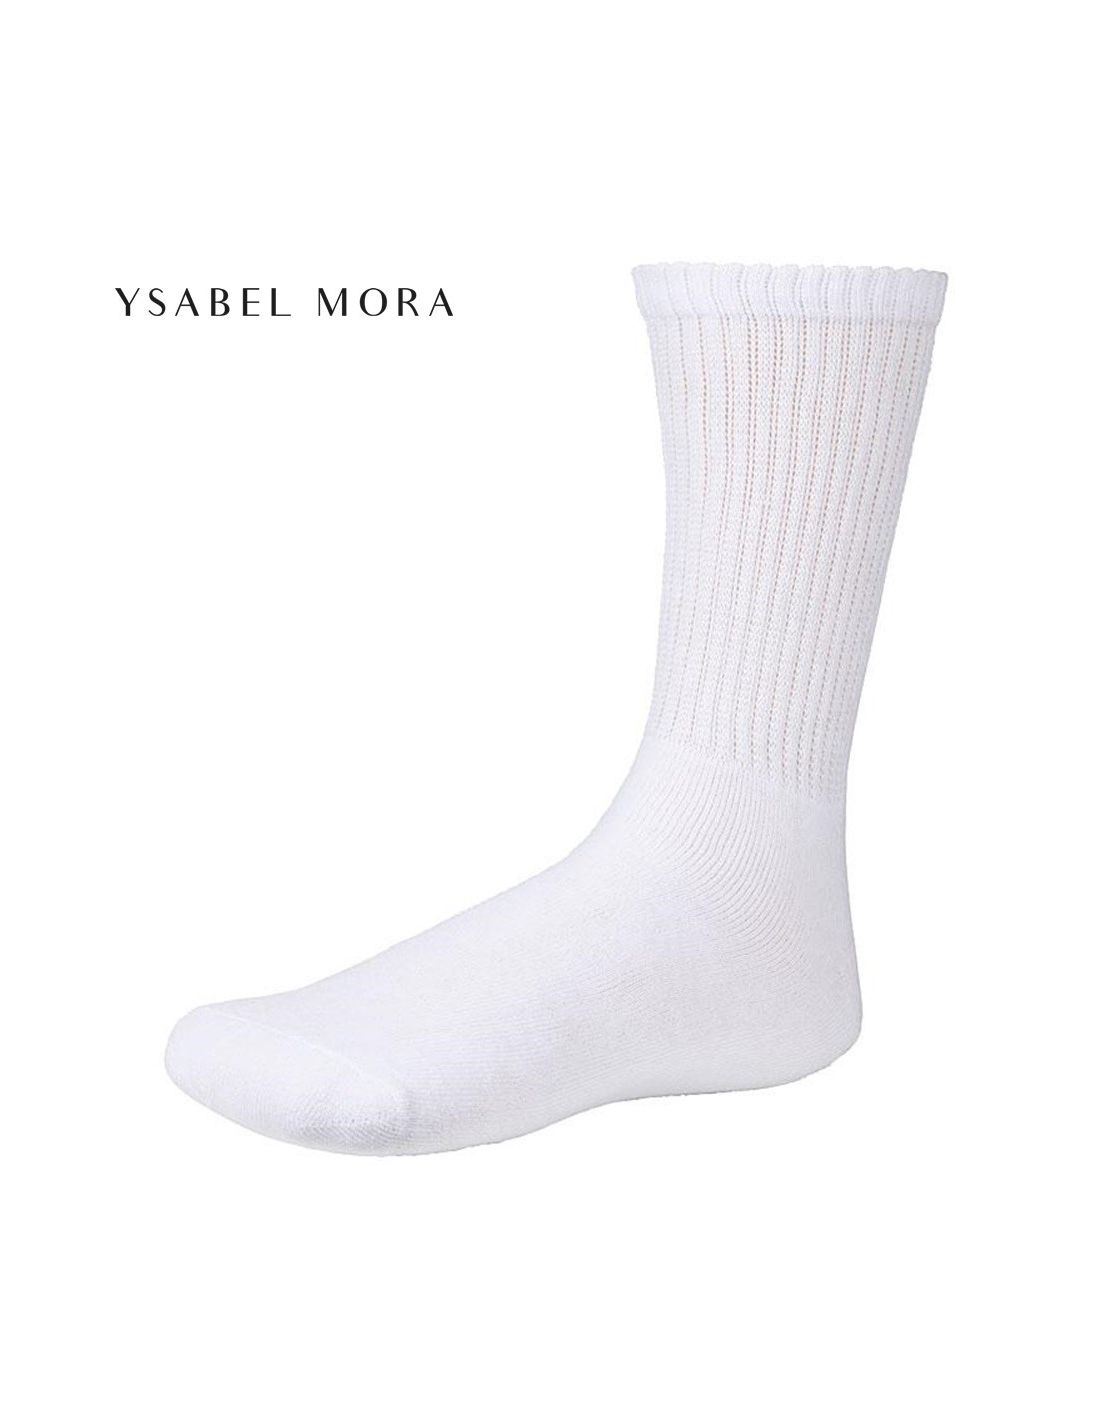 Calcetines deportivos pack de 3 – Ysabel Mora